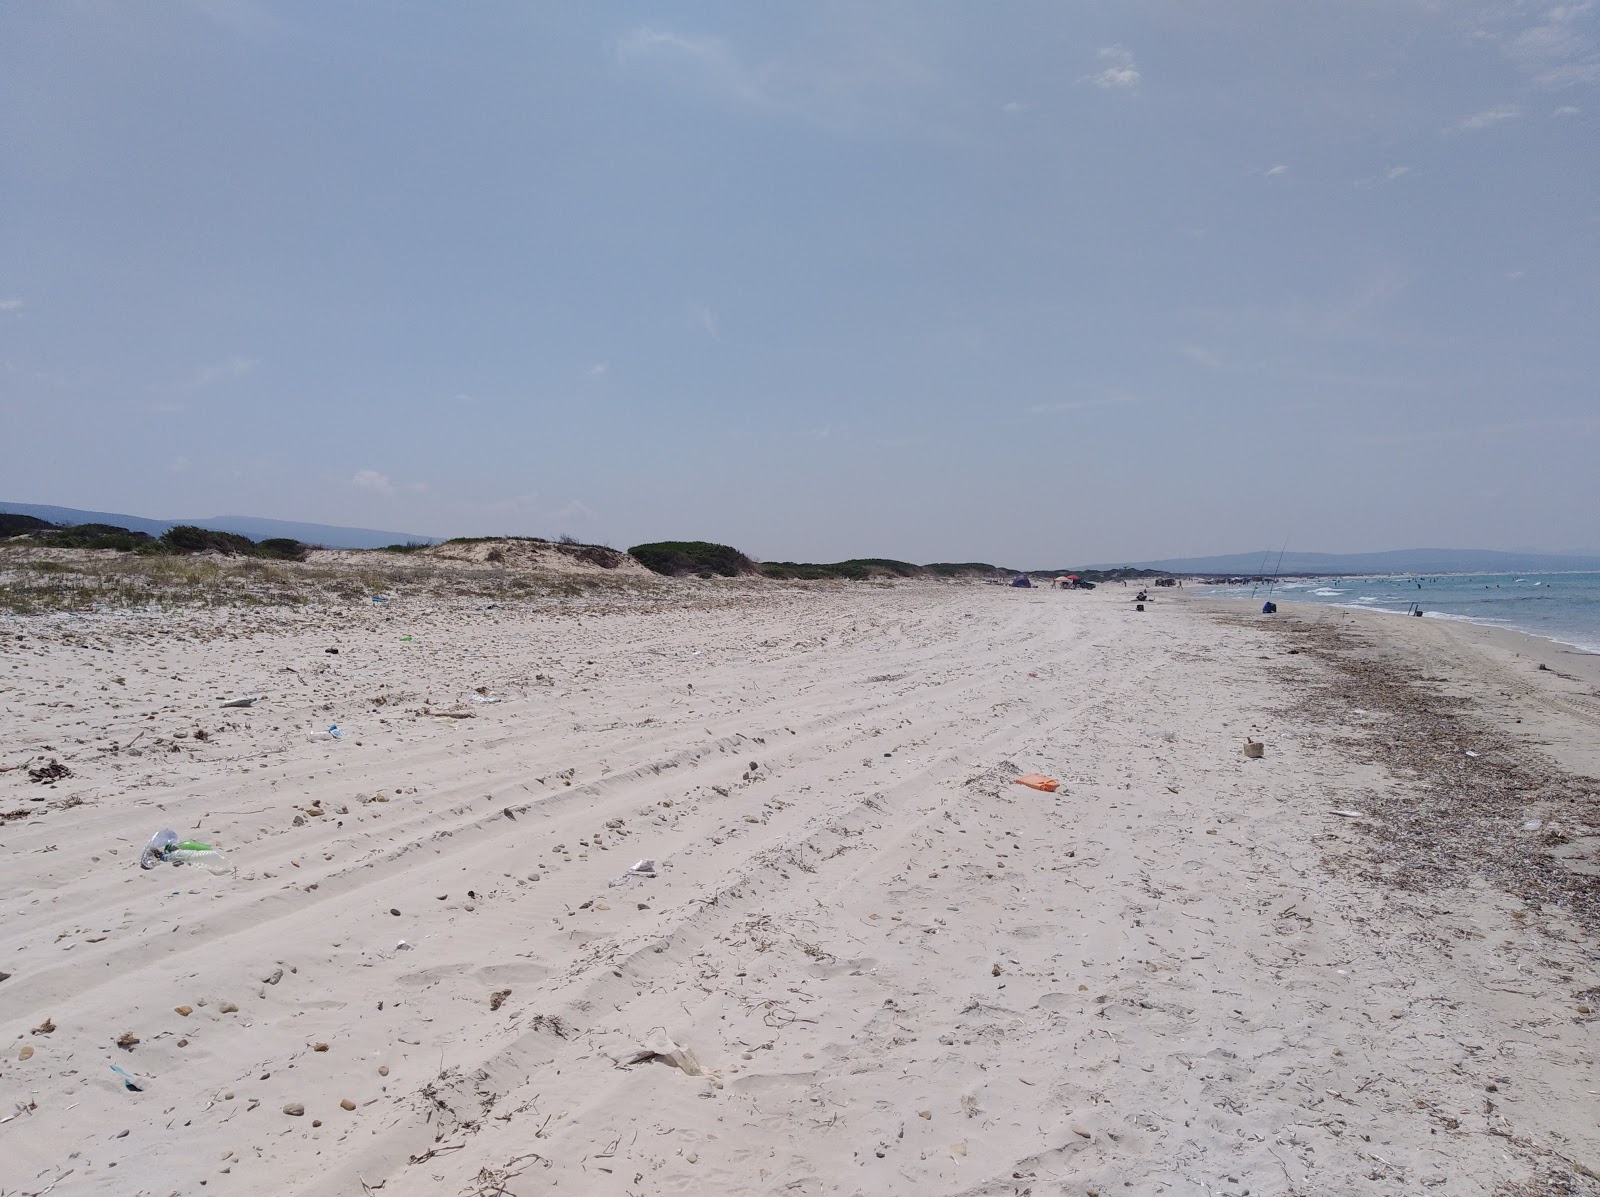 Zdjęcie Monotonous Beach z powierzchnią turkusowa czysta woda